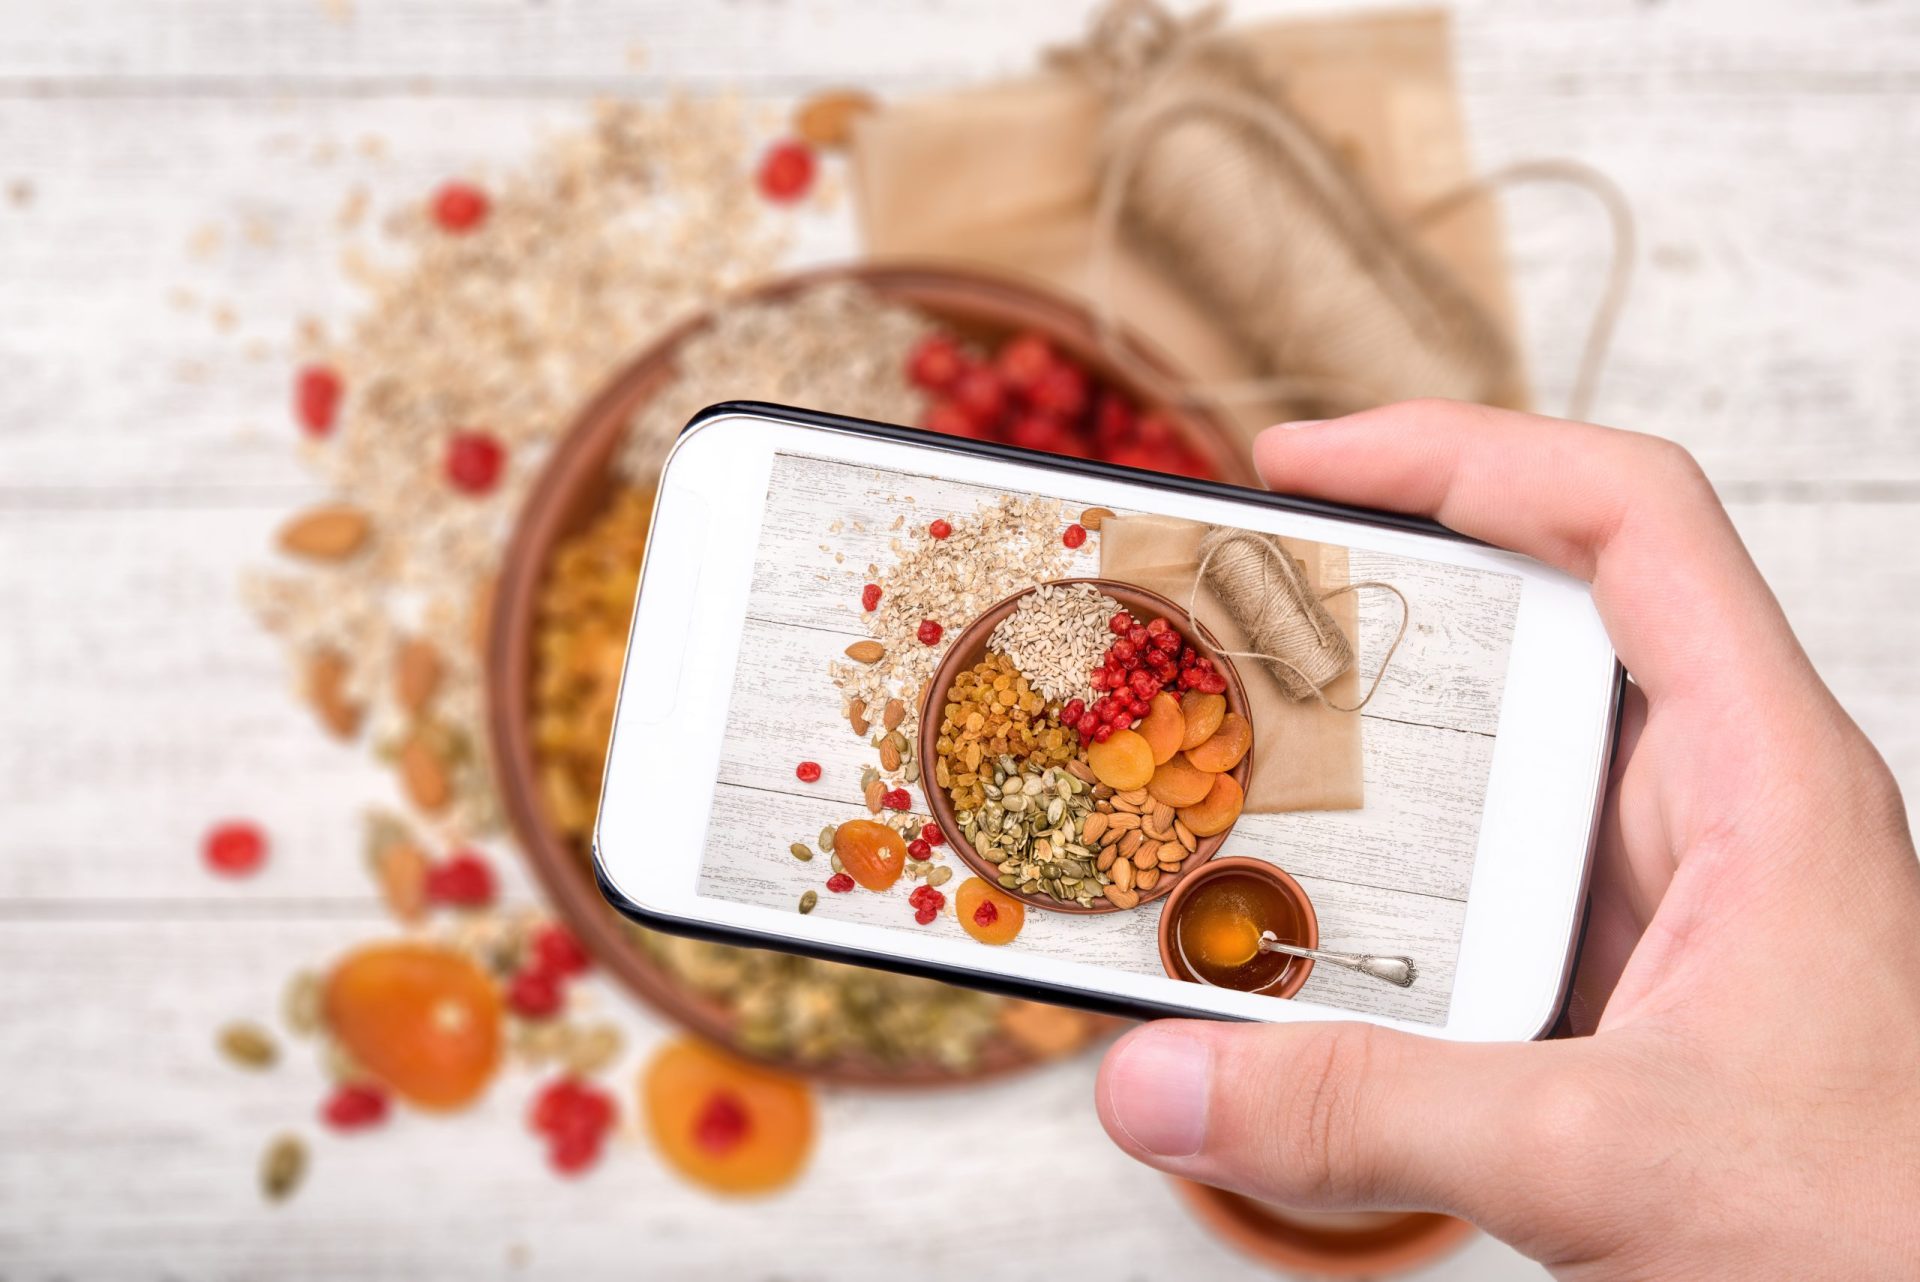 Estará o Instagram a mudar a forma como nos alimentamos?